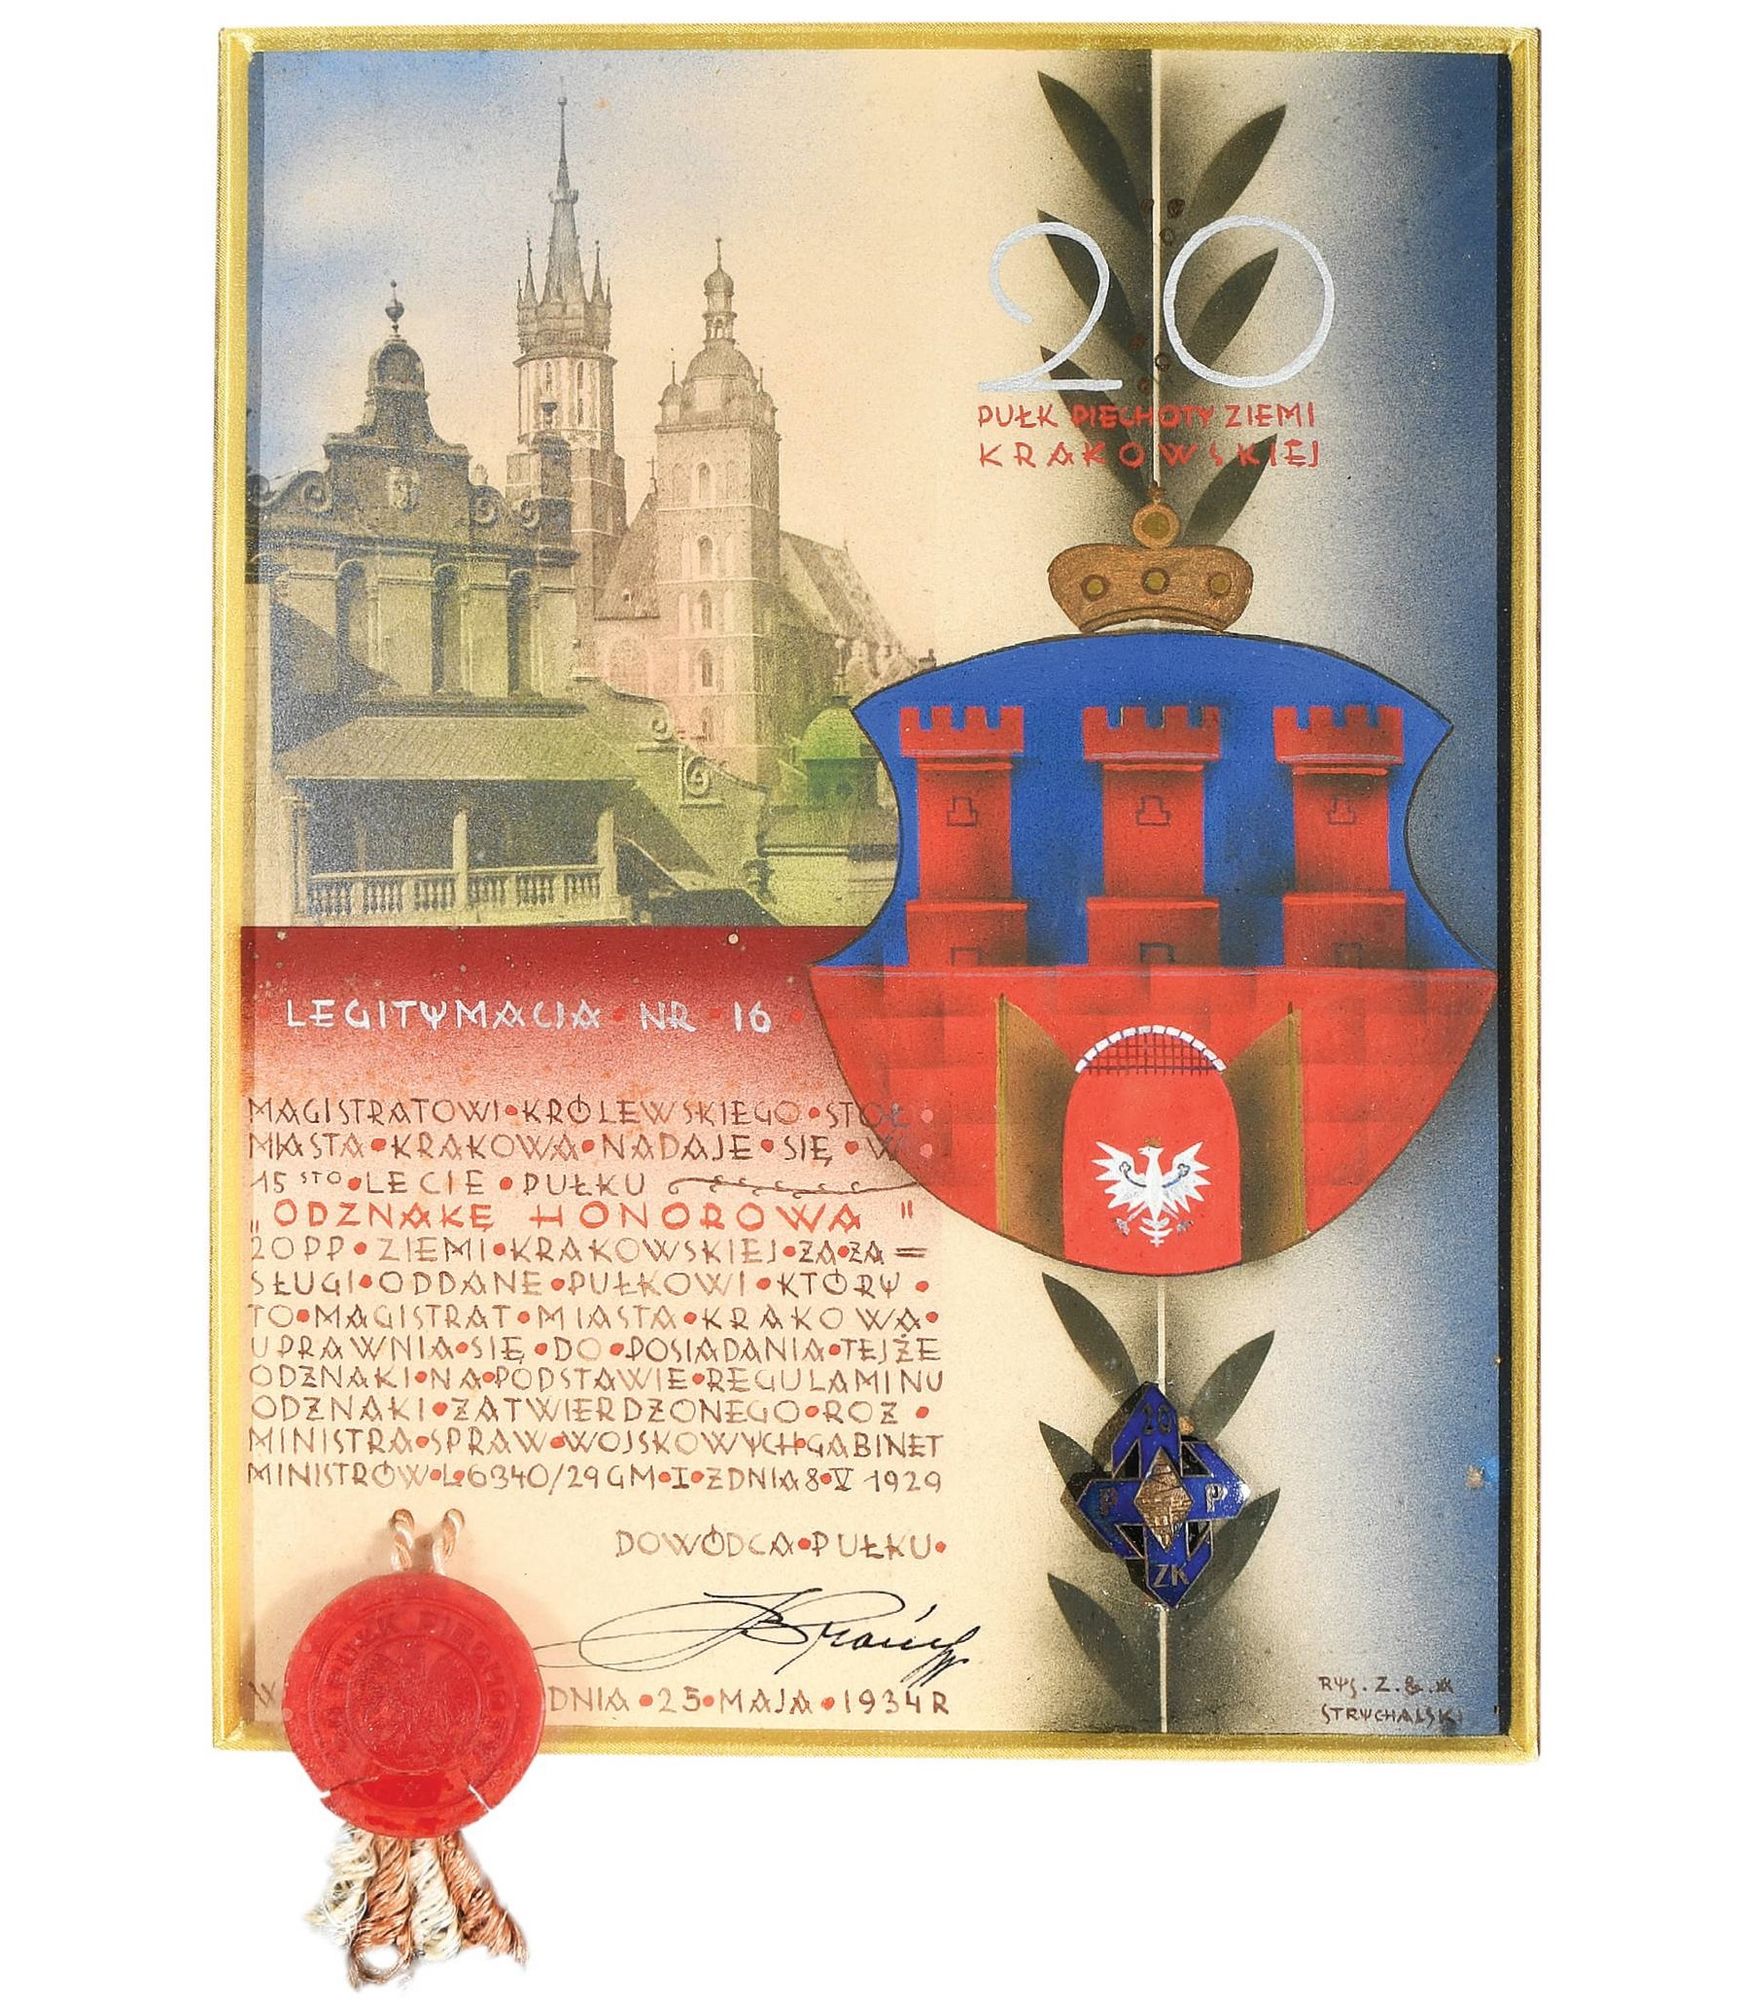 (472) Rok 1934 – legitymacja Odznaki Honorowej 20. Pułku Piechoty Ziemi Krakowskiej, jaką otrzymał krakowski Magistrat
(MK, nr inw. MHK Bibl. R 771)